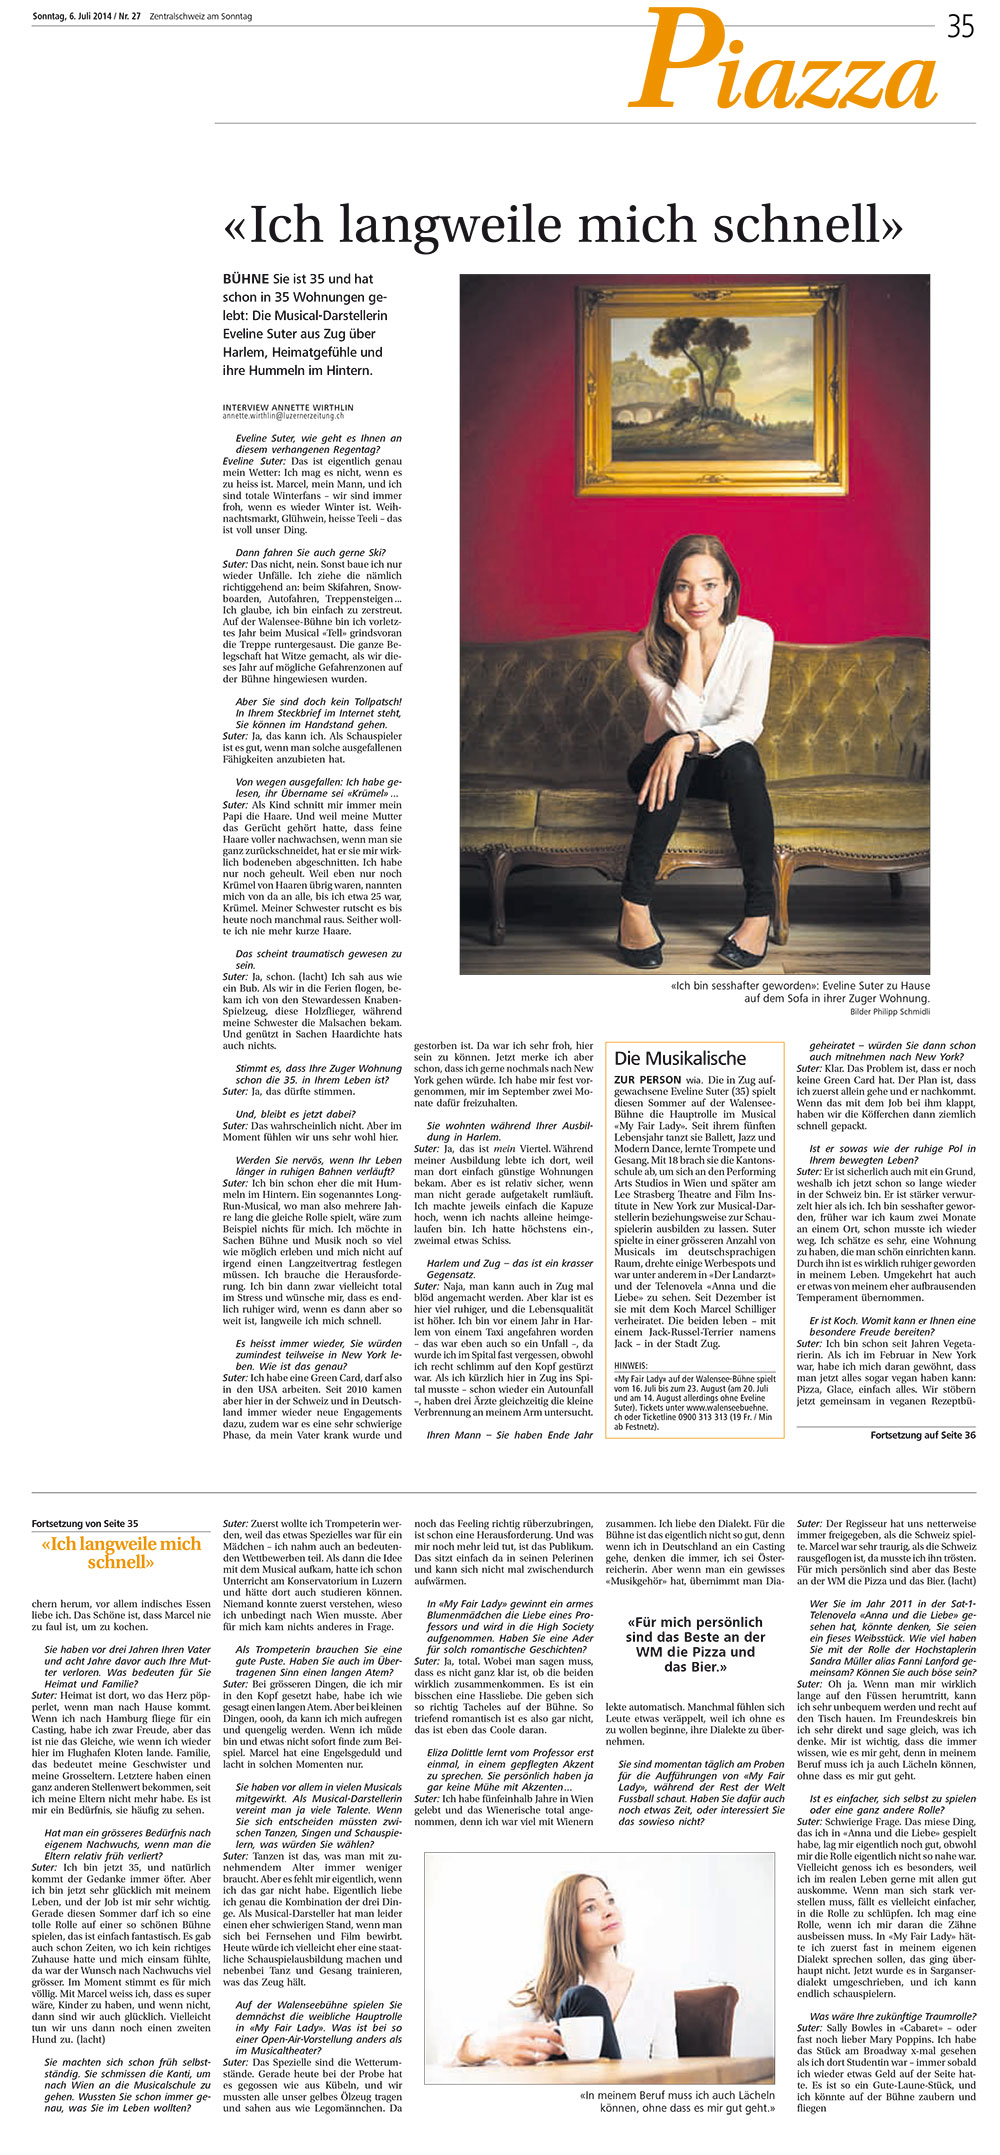 Neue Luzerner Zeitung / Juli 2014